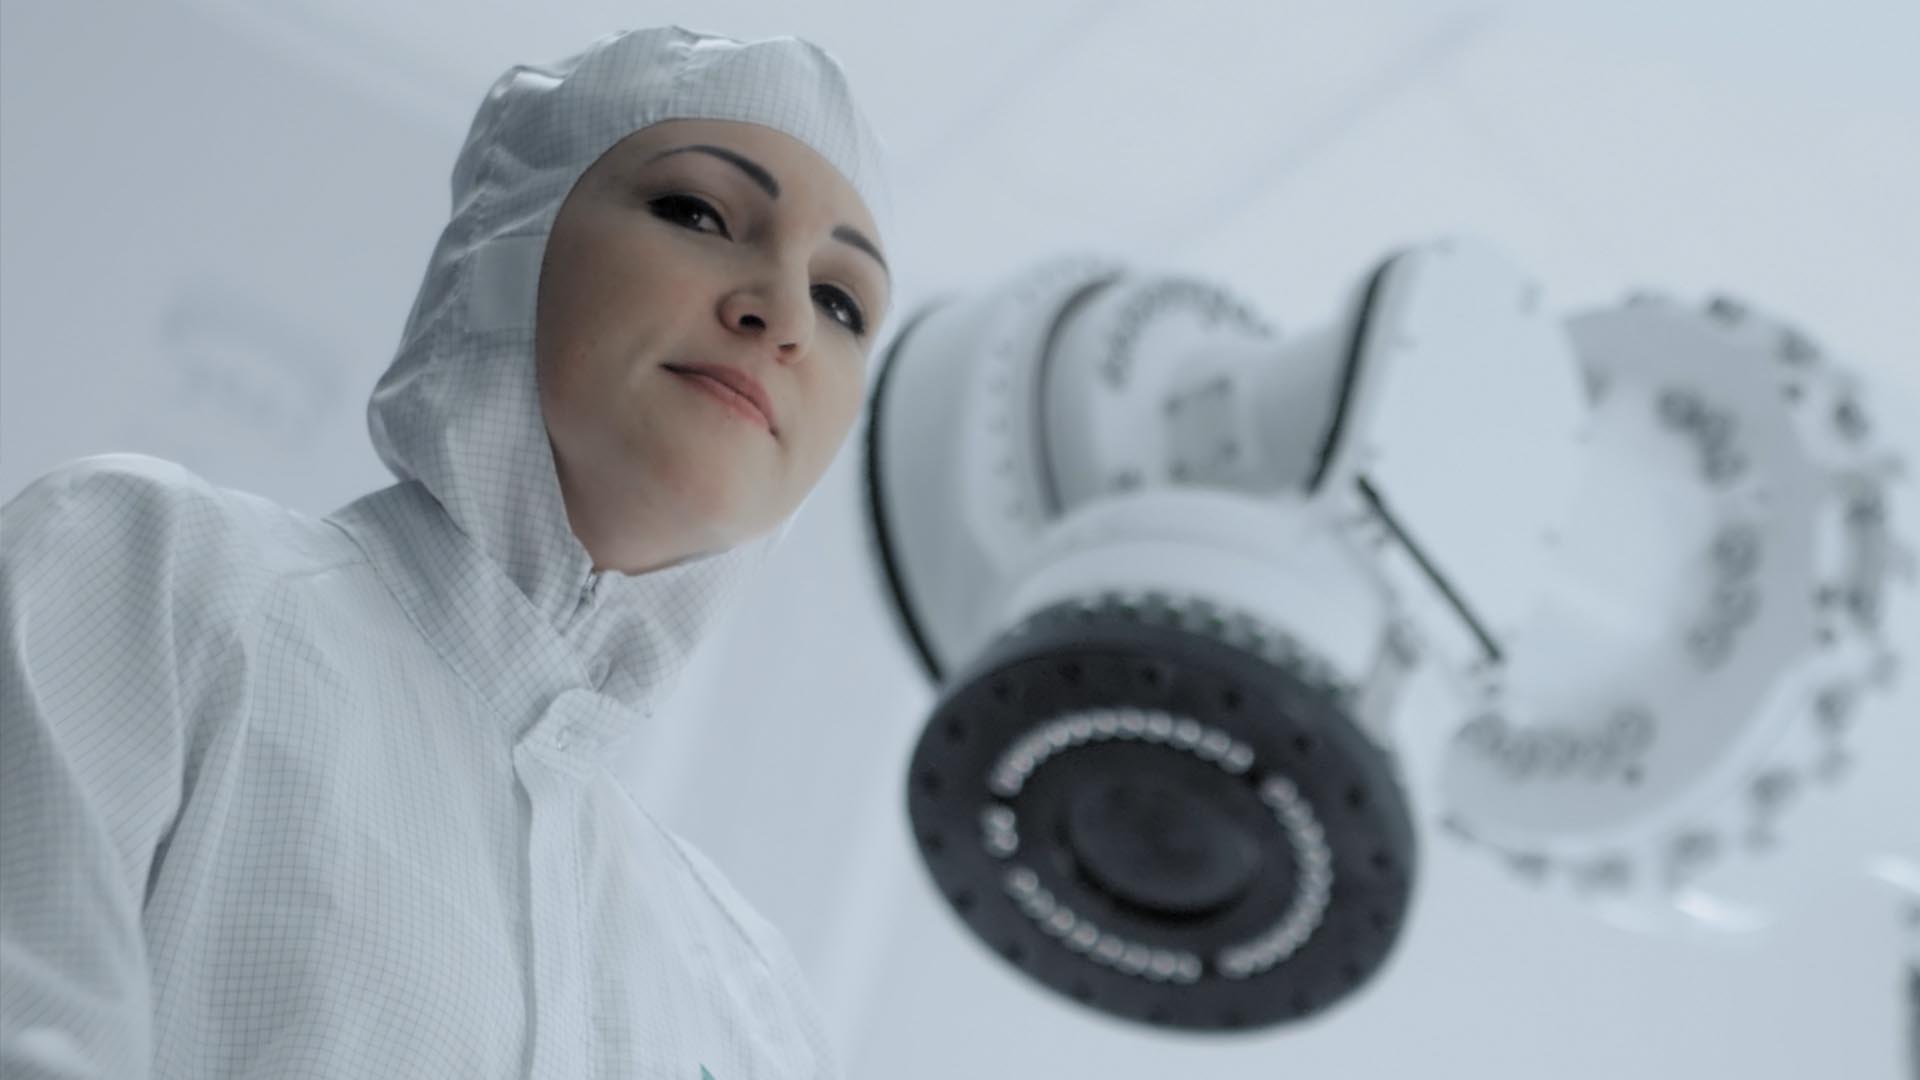 Ausschnitt aus dem Fraunhofer Recruitingspot, eine Frau in Schutzanzug steht vor einer Maschine